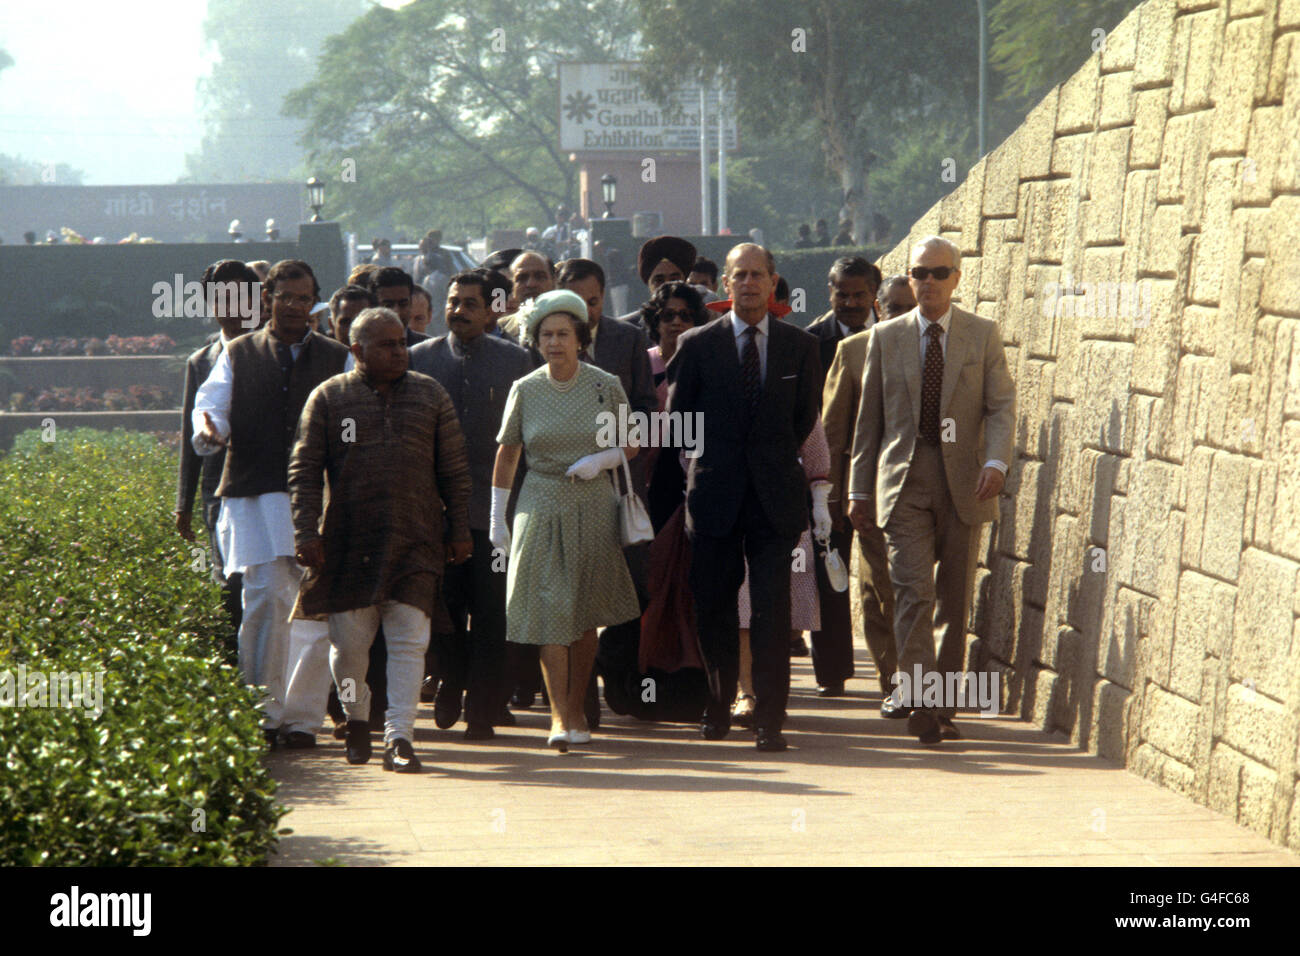 The Queen and the Duke of Edinburgh arrive at the Mahatma Gandhi memorial at Raj Ghat, Delhi. Stock Photo